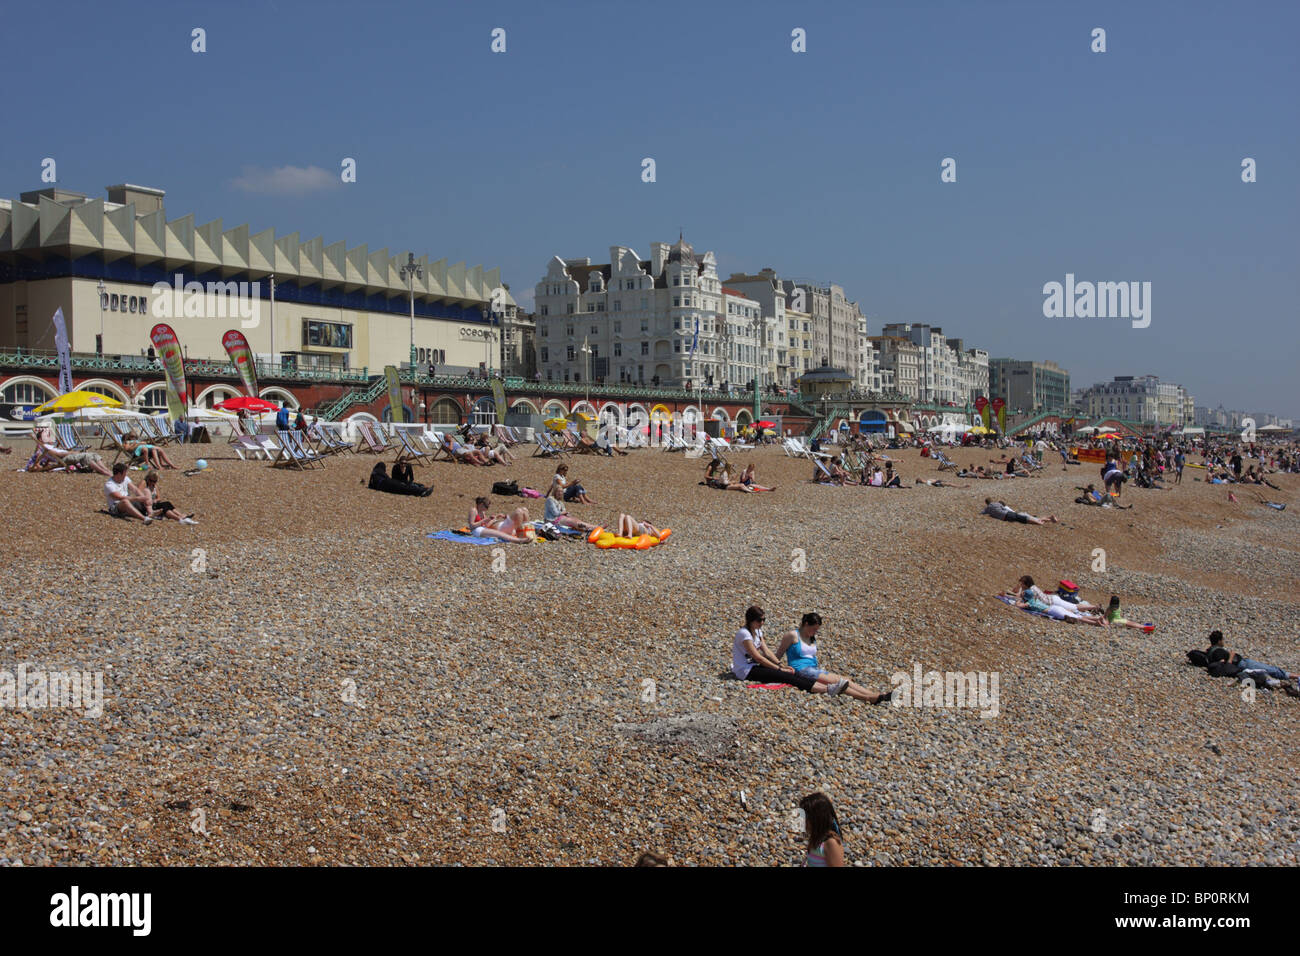 Bank Holiday i turisti e i locali godendo di bel tempo sulla spiaggia di Brighton. Foto Stock